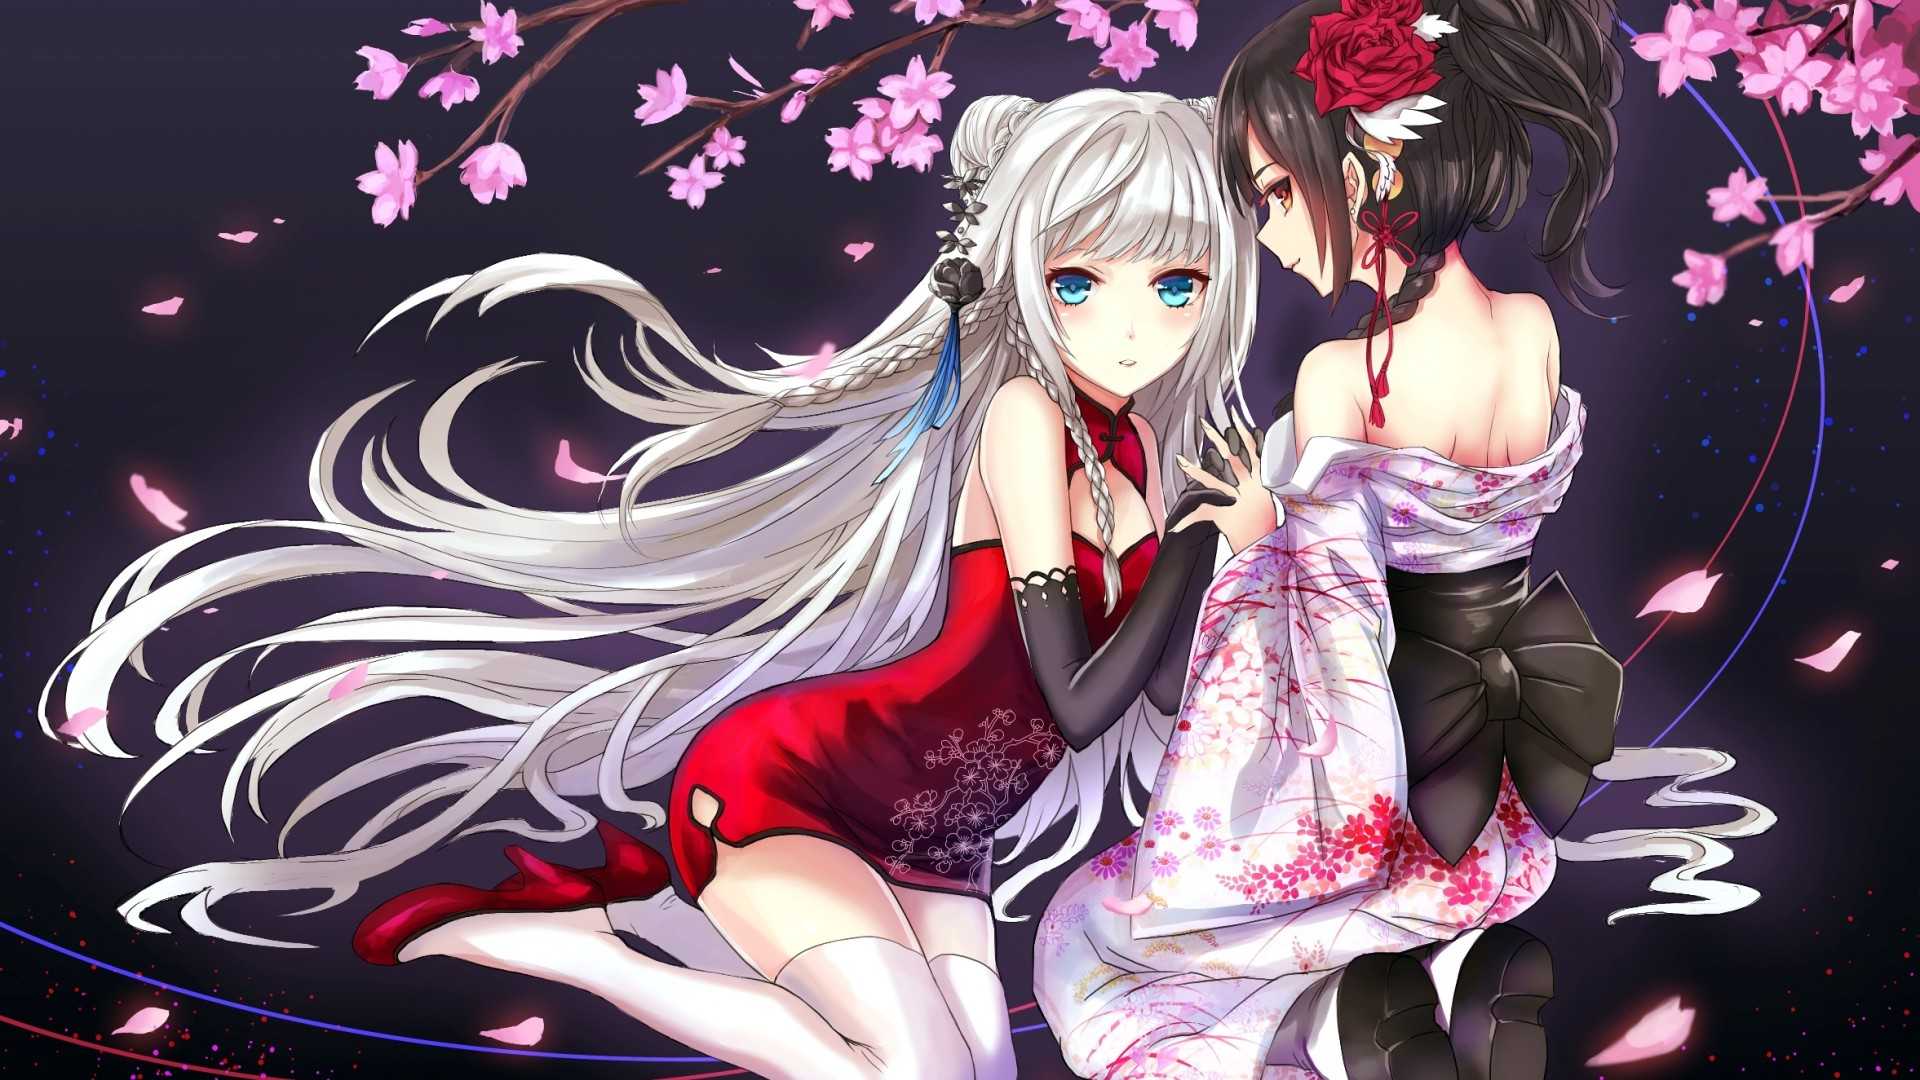 两个女孩,樱花,和服裙子,动漫美少女壁纸